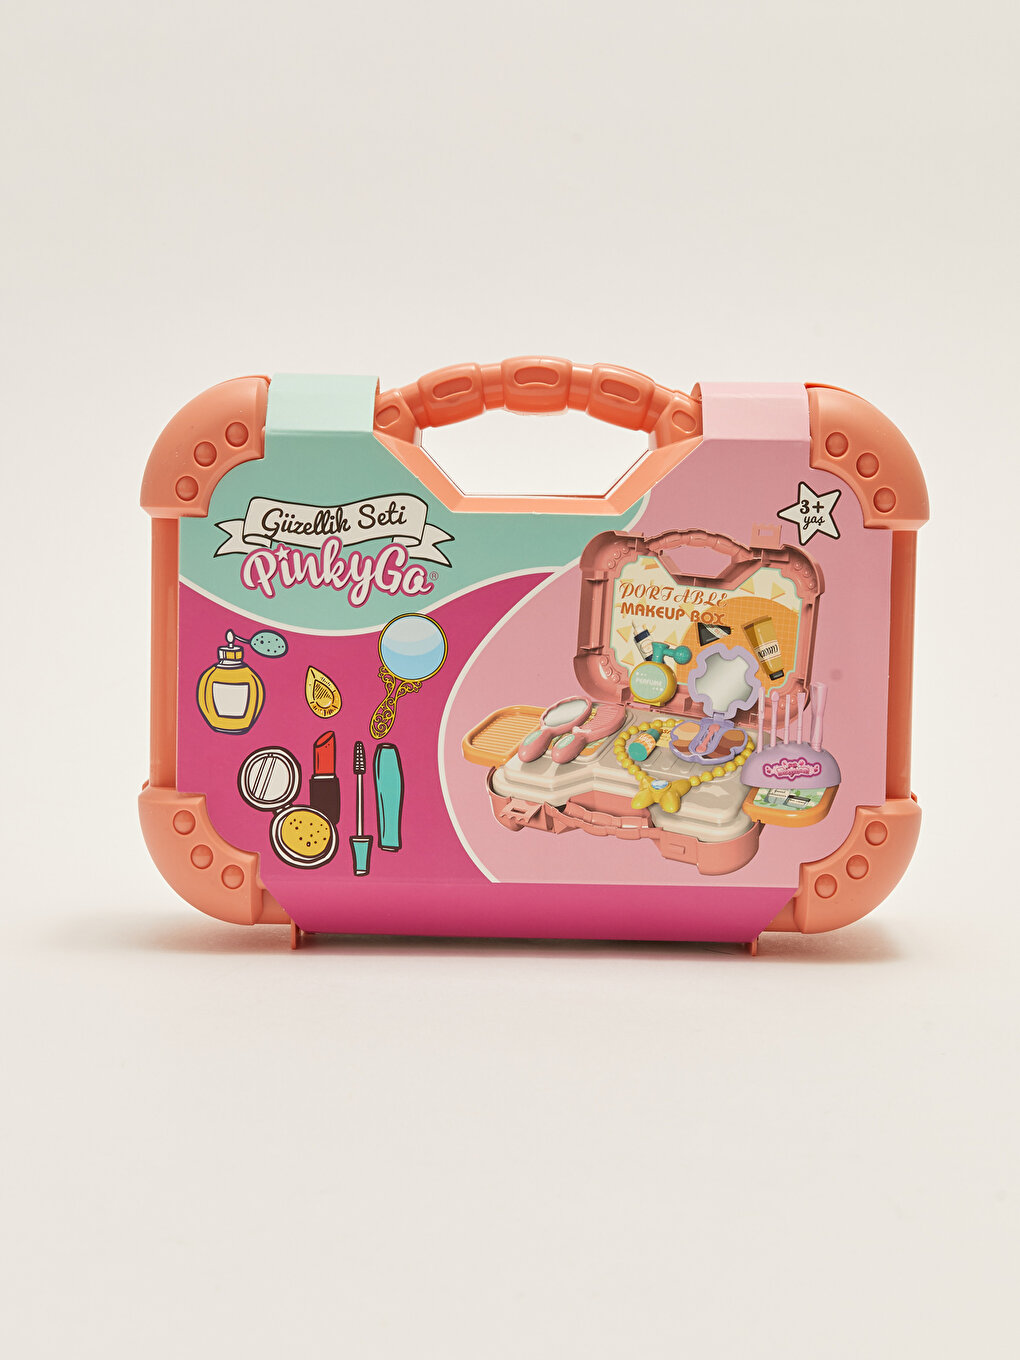 Toy Beauty Kit with Bag -W26666Z4-M0T - W26666Z4-M0T - LC Waikiki